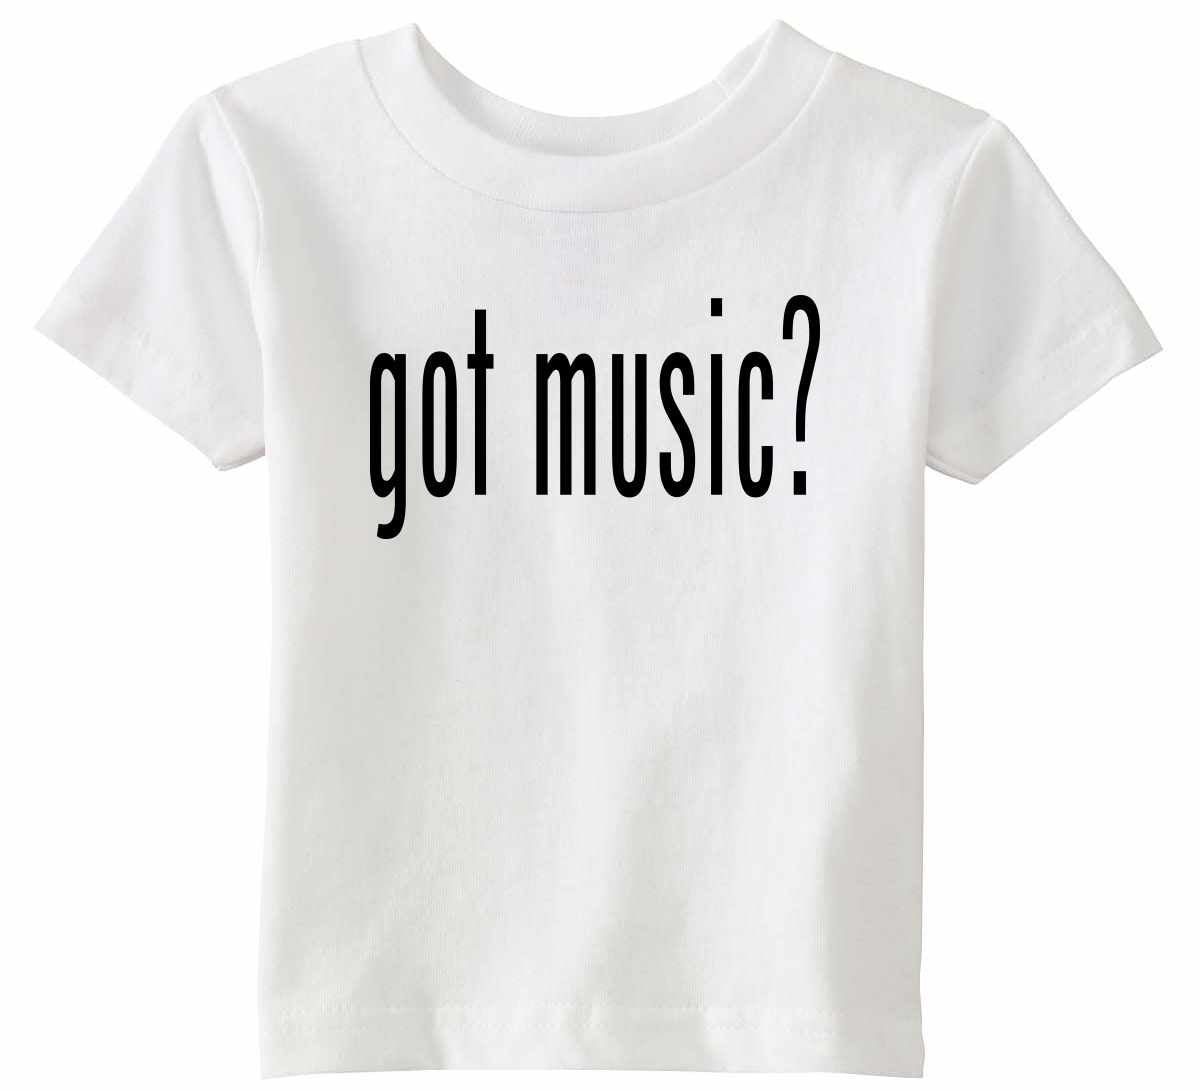 Got Music? on Infant-Toddler T-Shirt (#840-7)